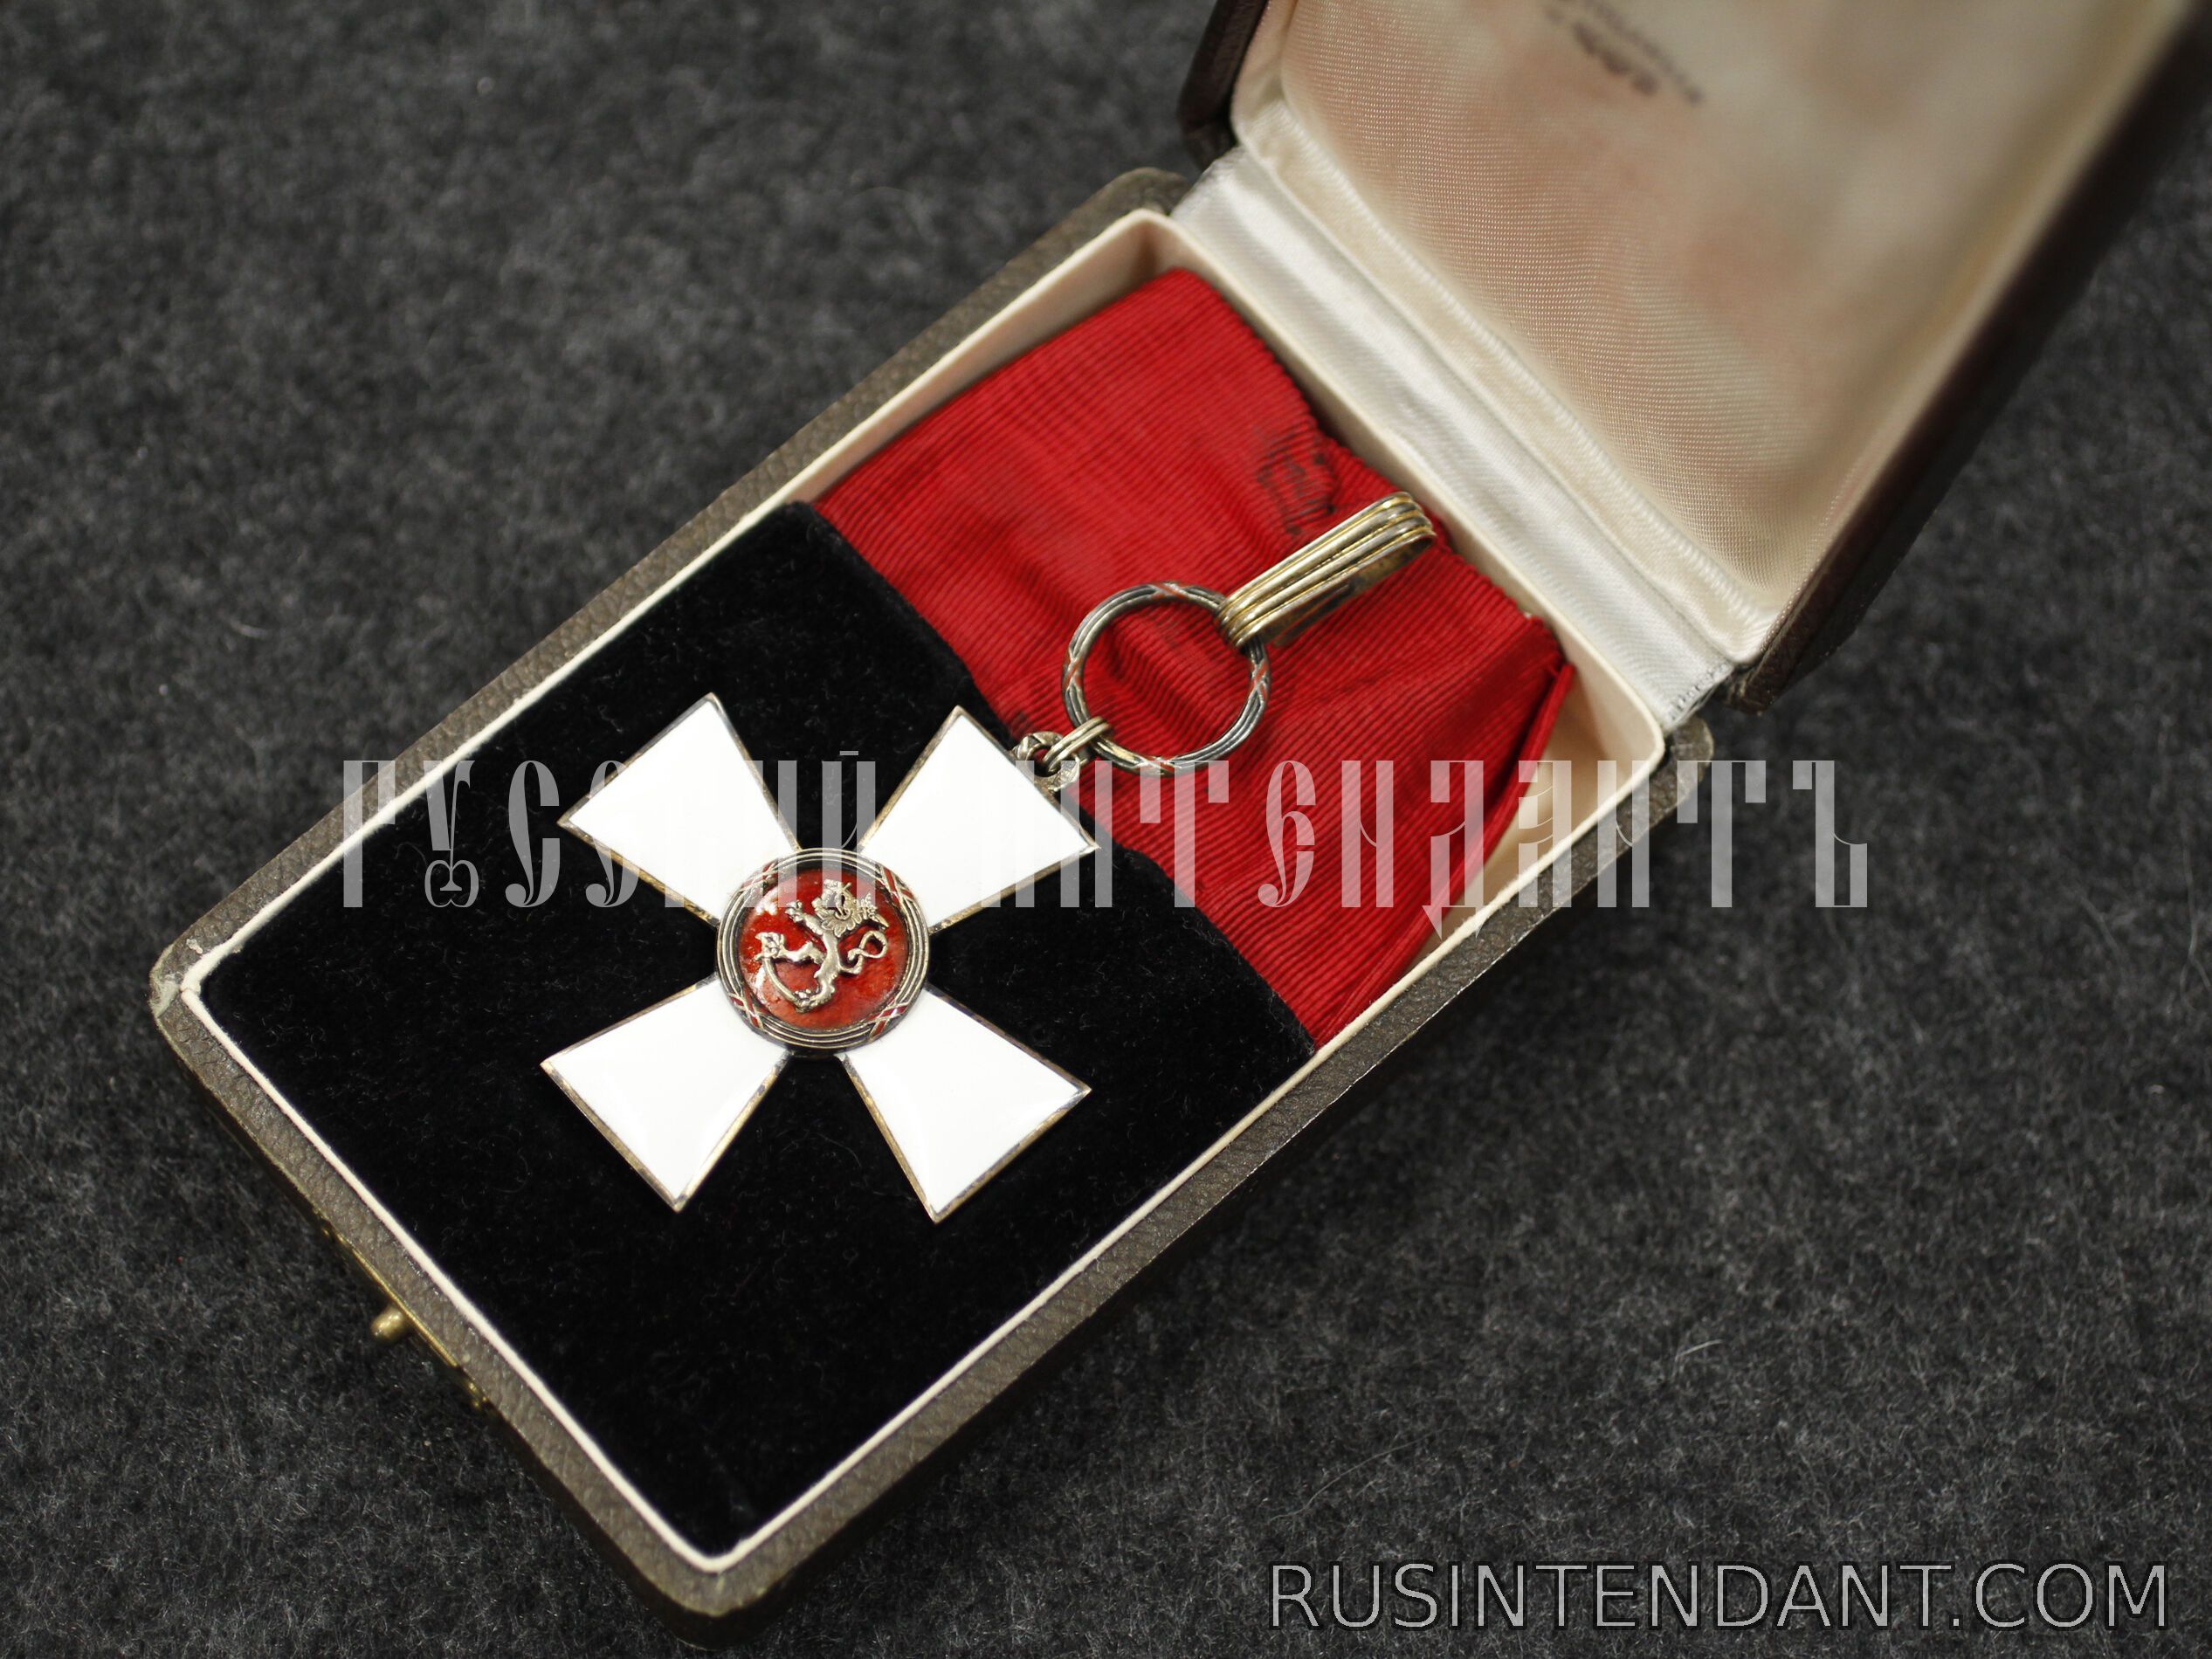 Фото 3: Командорский крест Ордена Льва Финляндии 